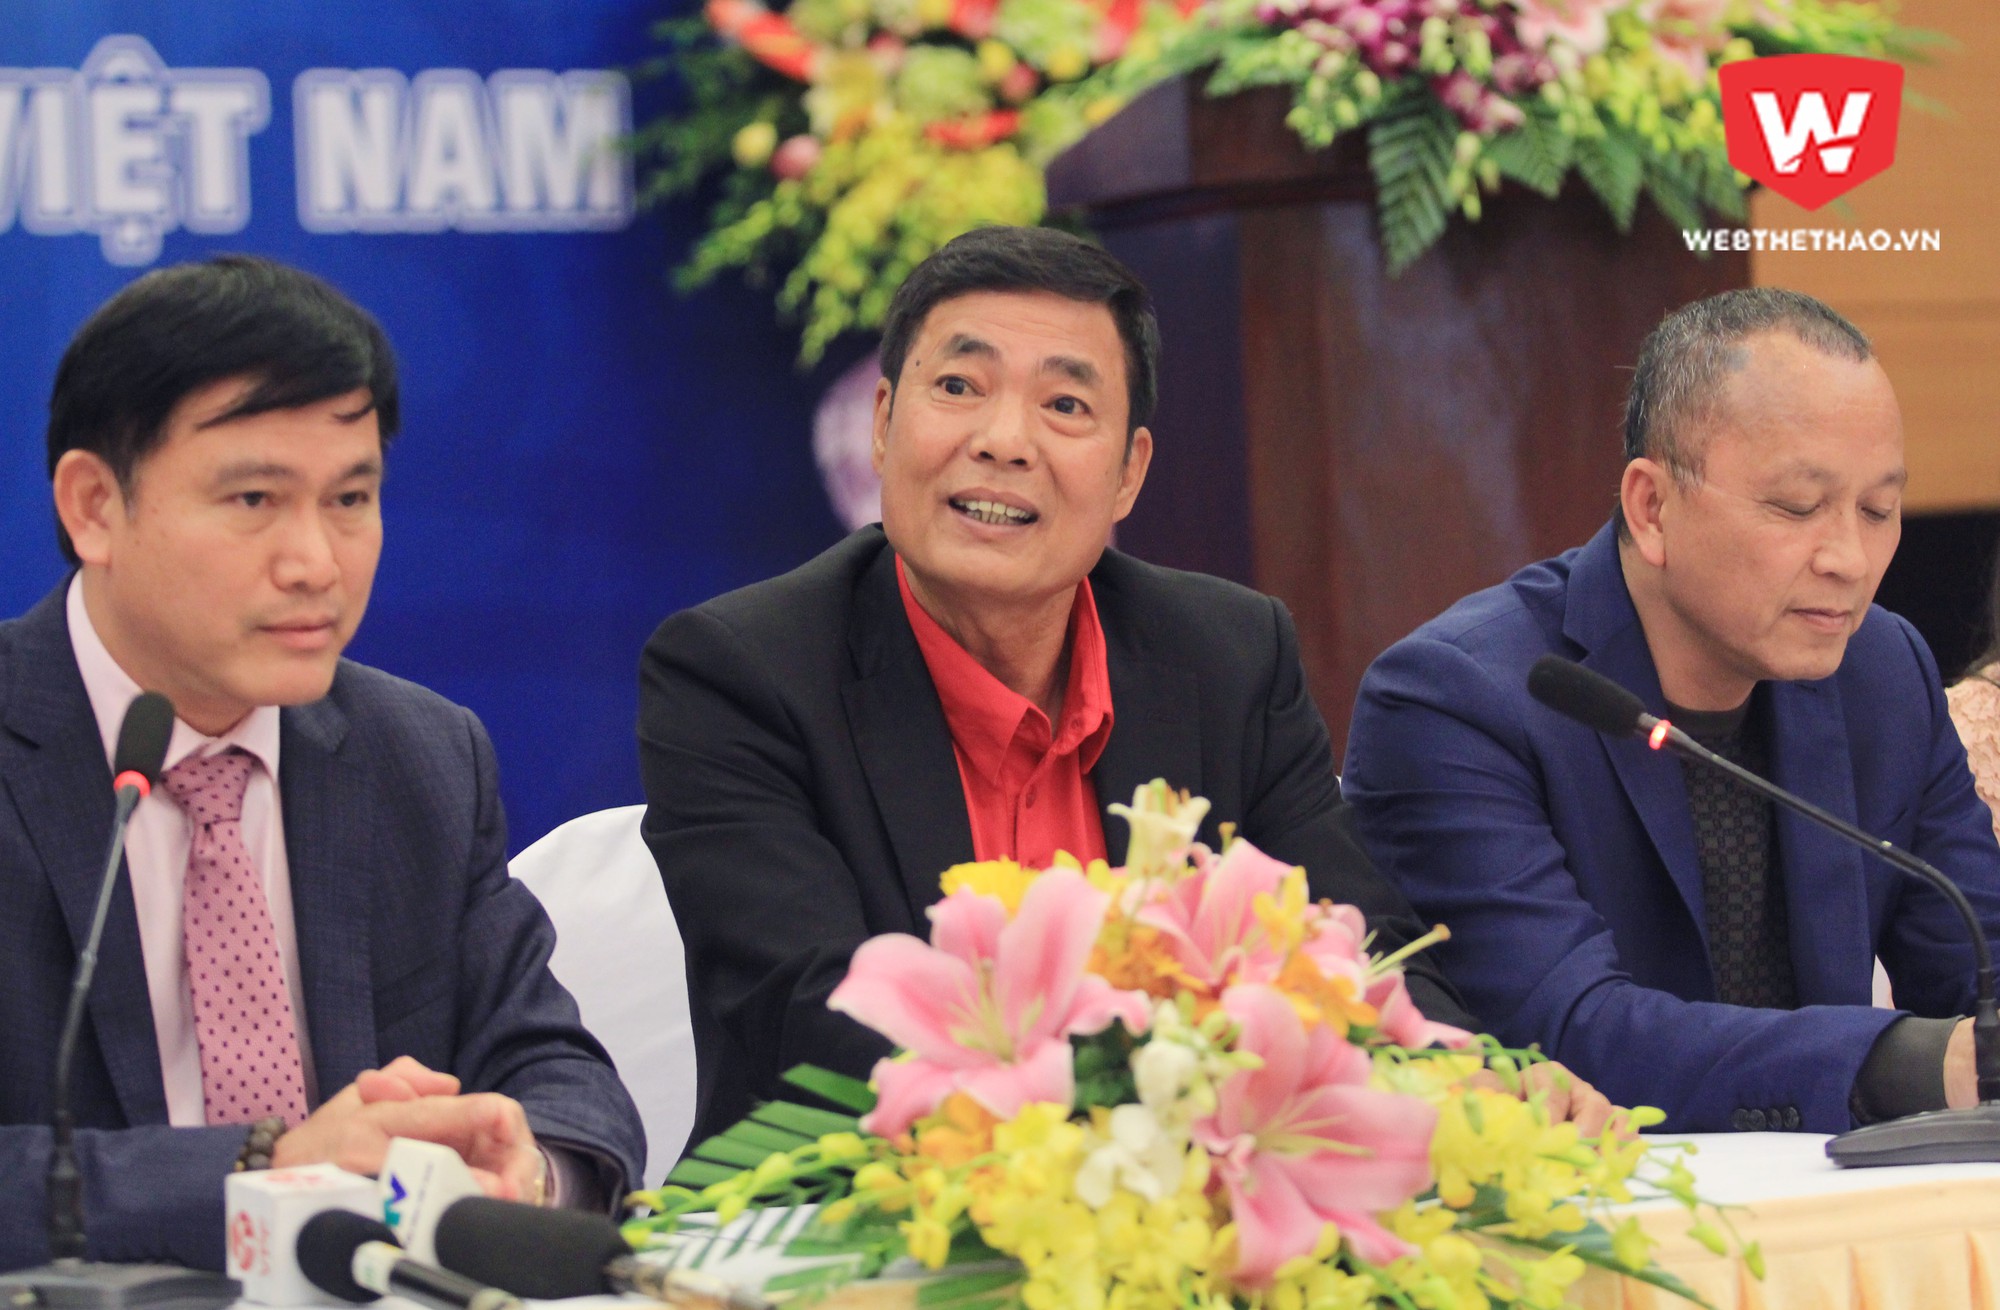 Chủ tịch CLB Hải Phòng, ông Trần Mạnh Hùng, ngồi vào ghế Phó chủ tịch VPF nhiệm kỳ 2017 - 2020. Ảnh: Trung Thu.